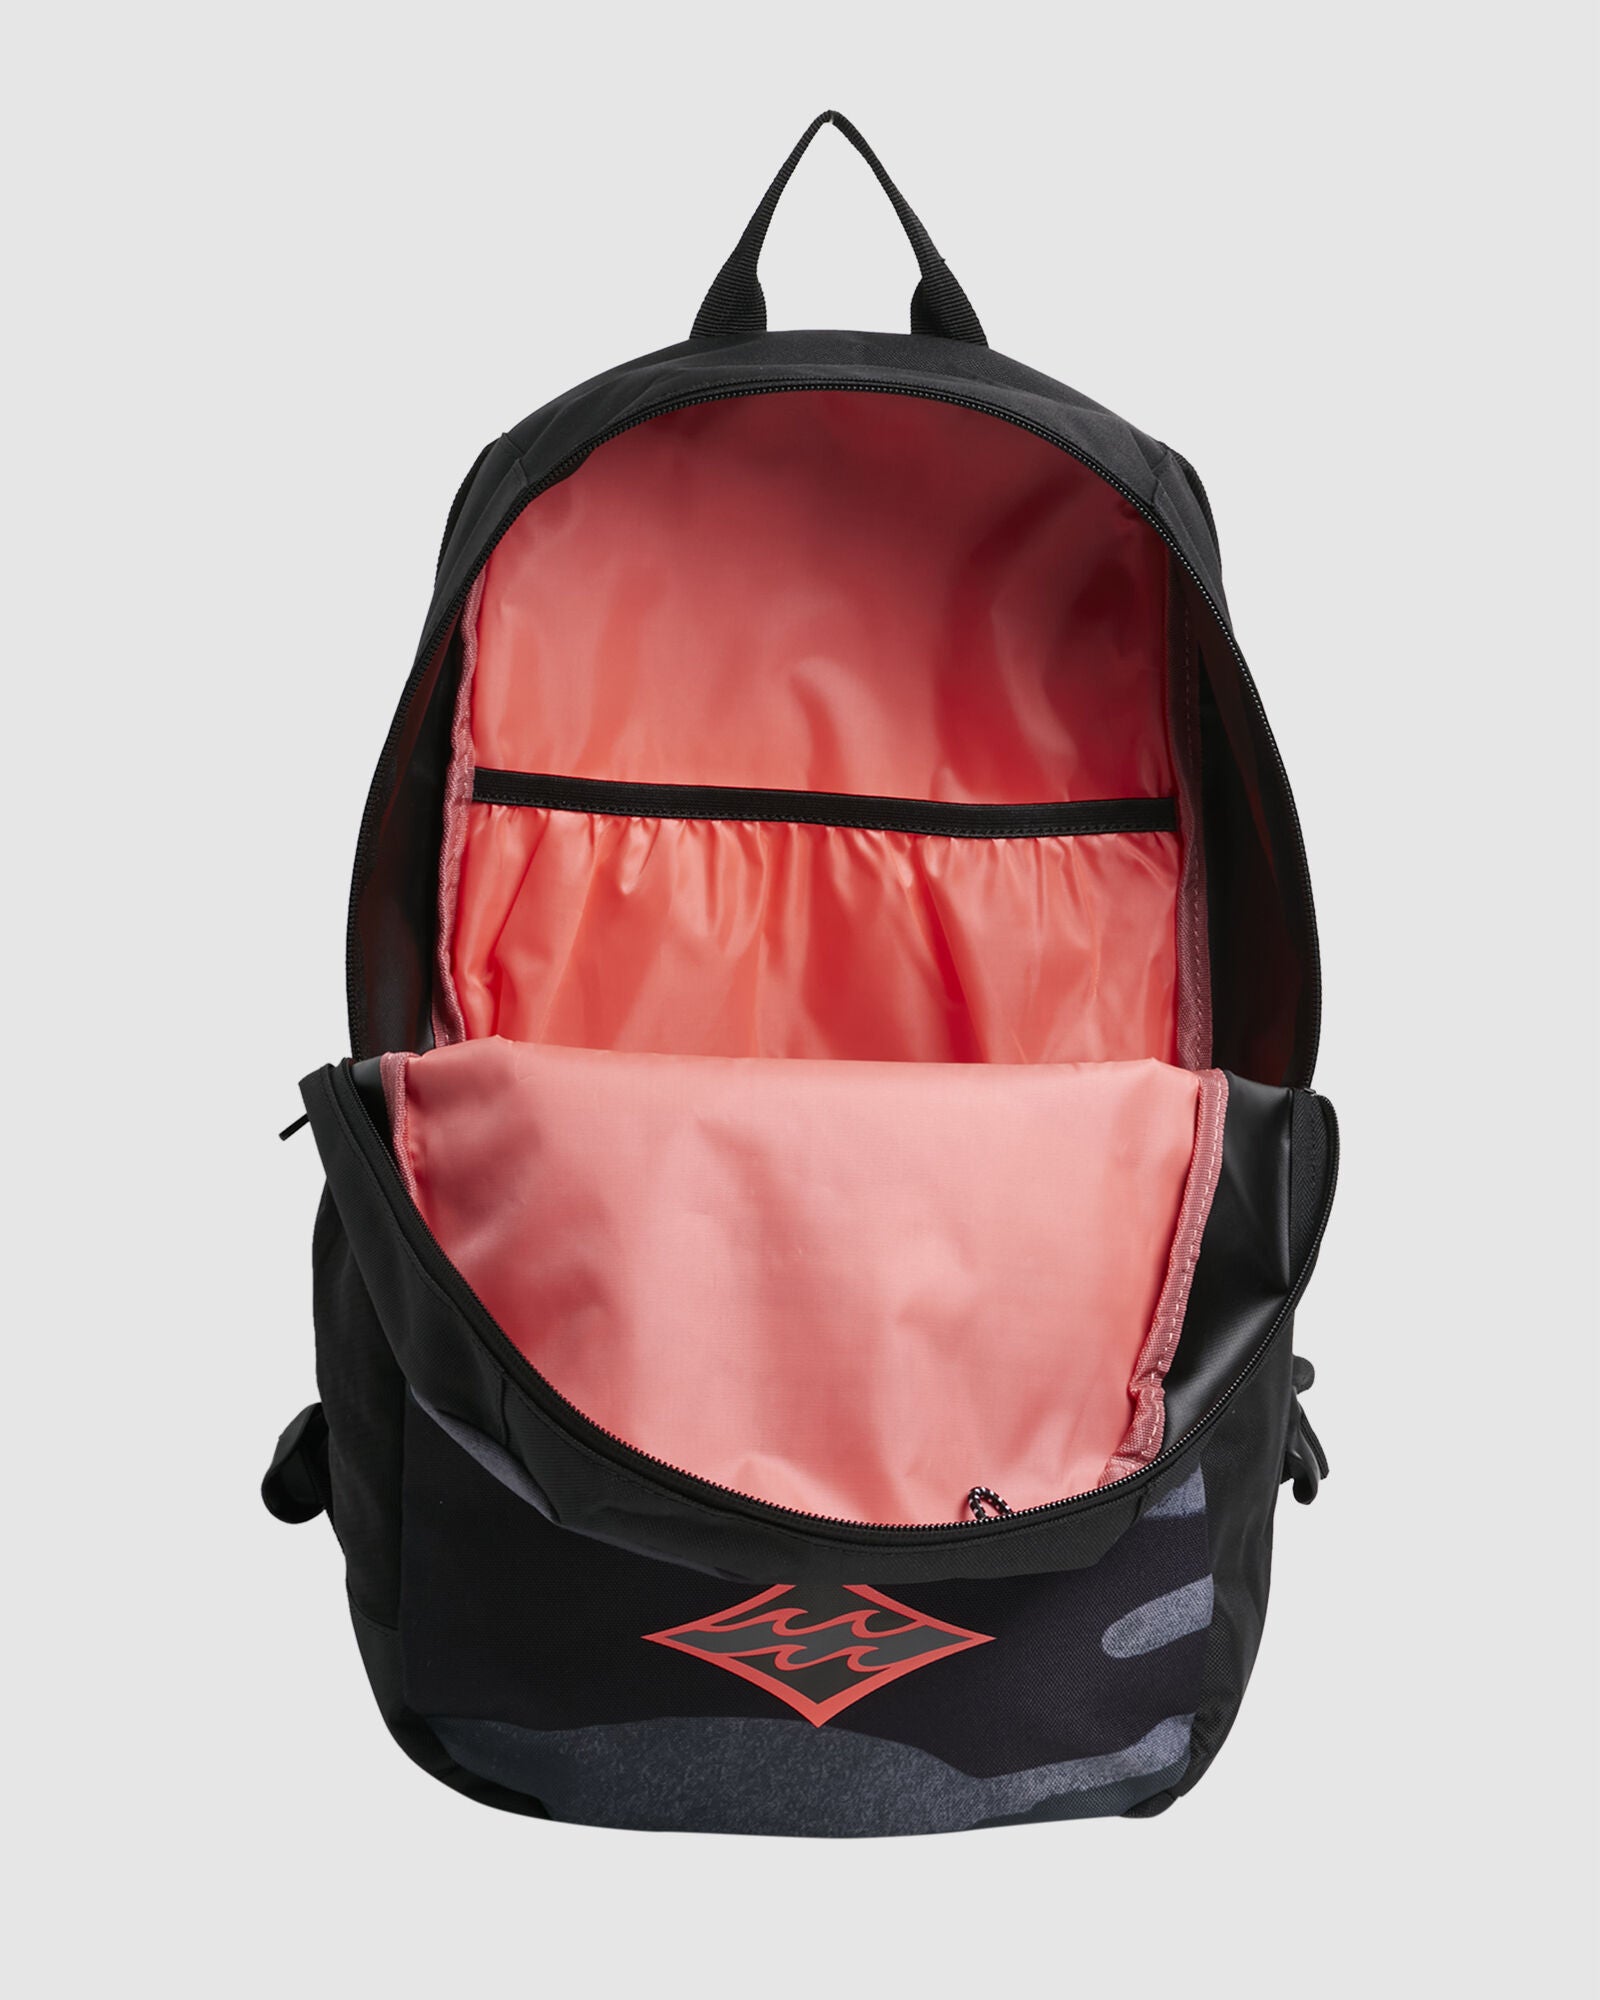 NORFOLK LITE camo billabong mens backpack back to school compartments screen logo drink bottle holder